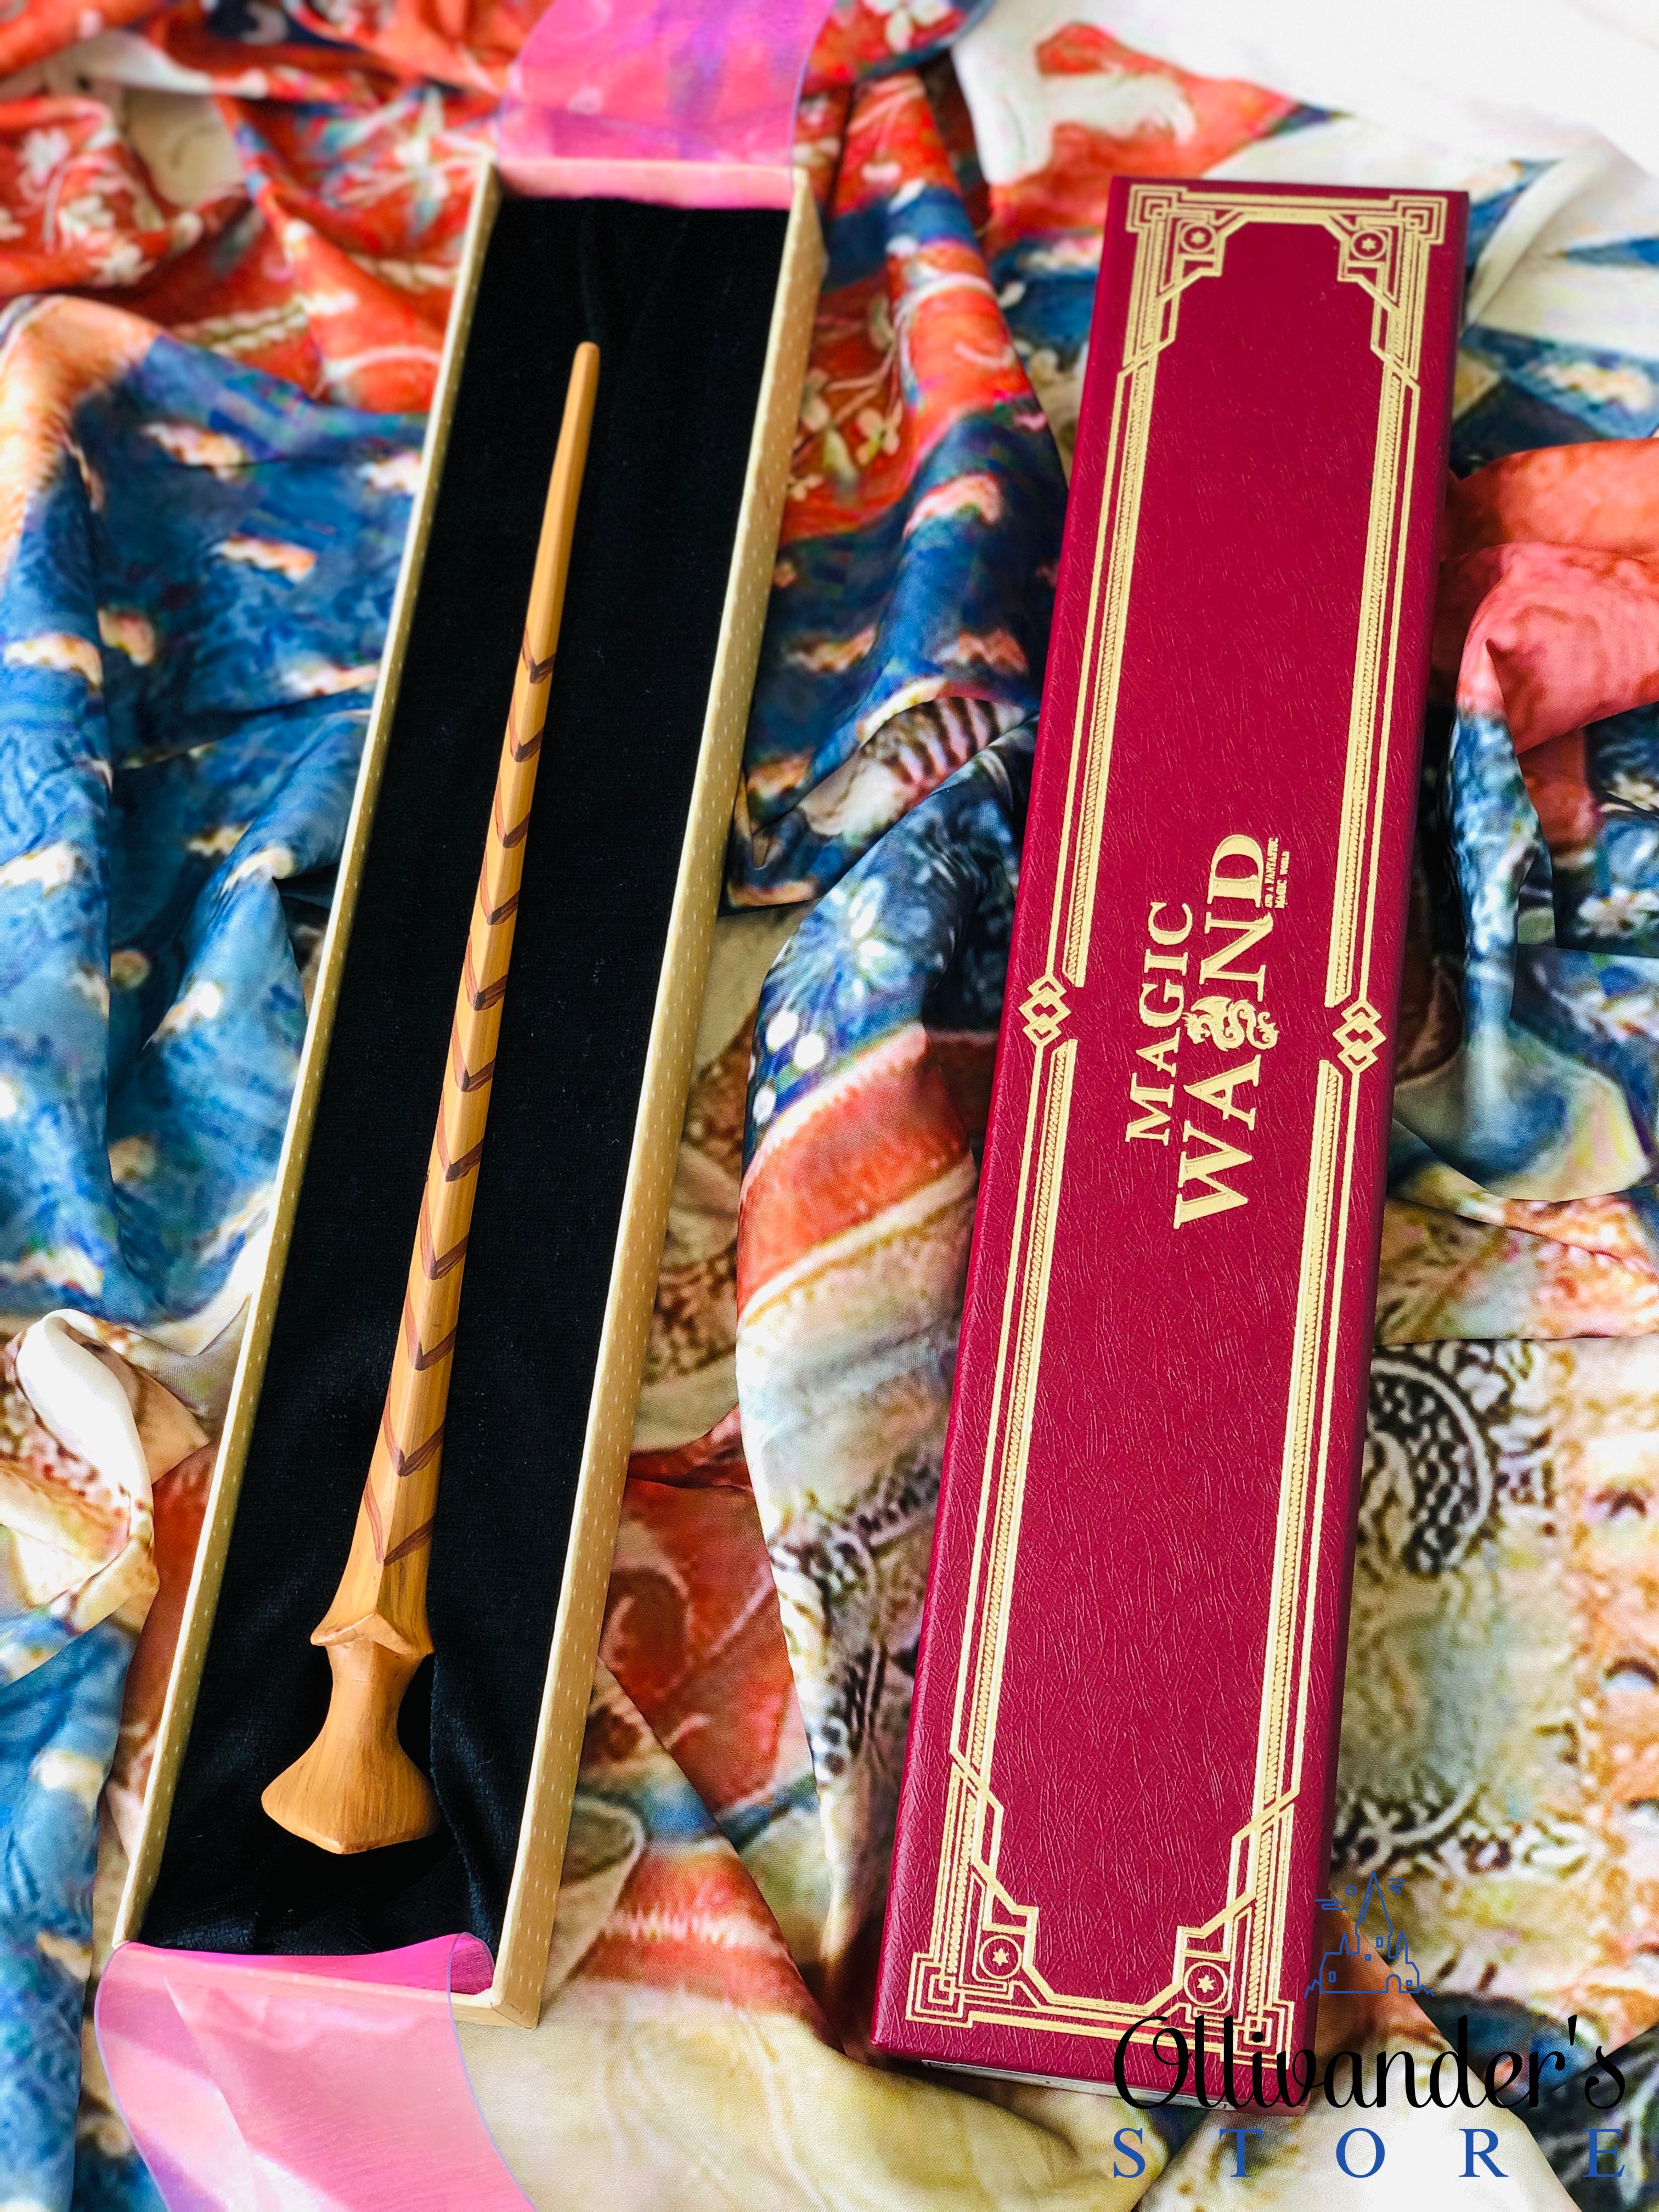 Nymphadora Tonks collectible wand